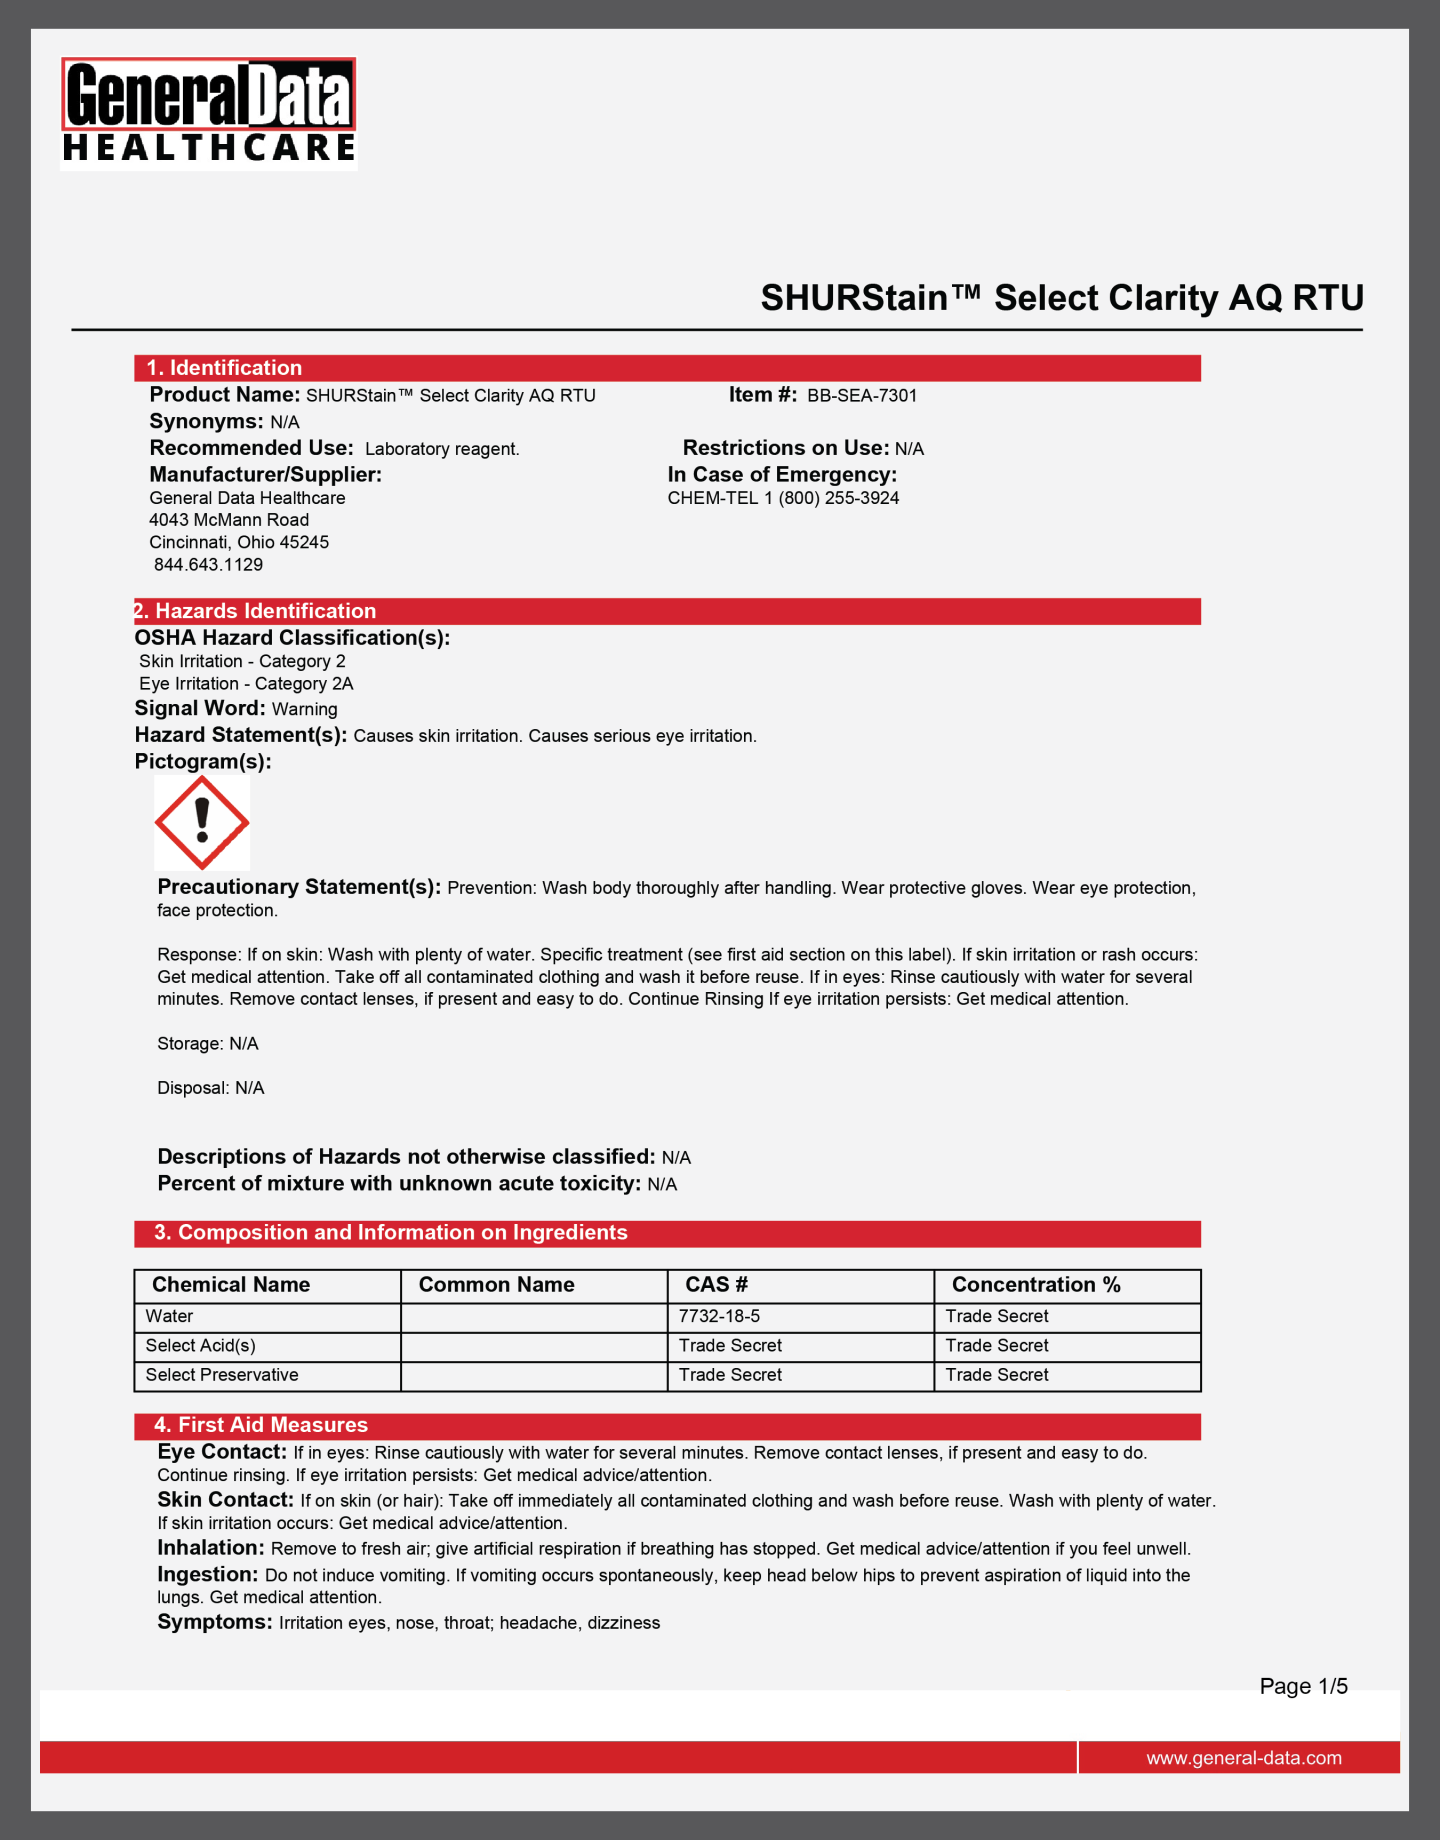 SHURStain Select Clarity AQ RTU Safety Data Sheet